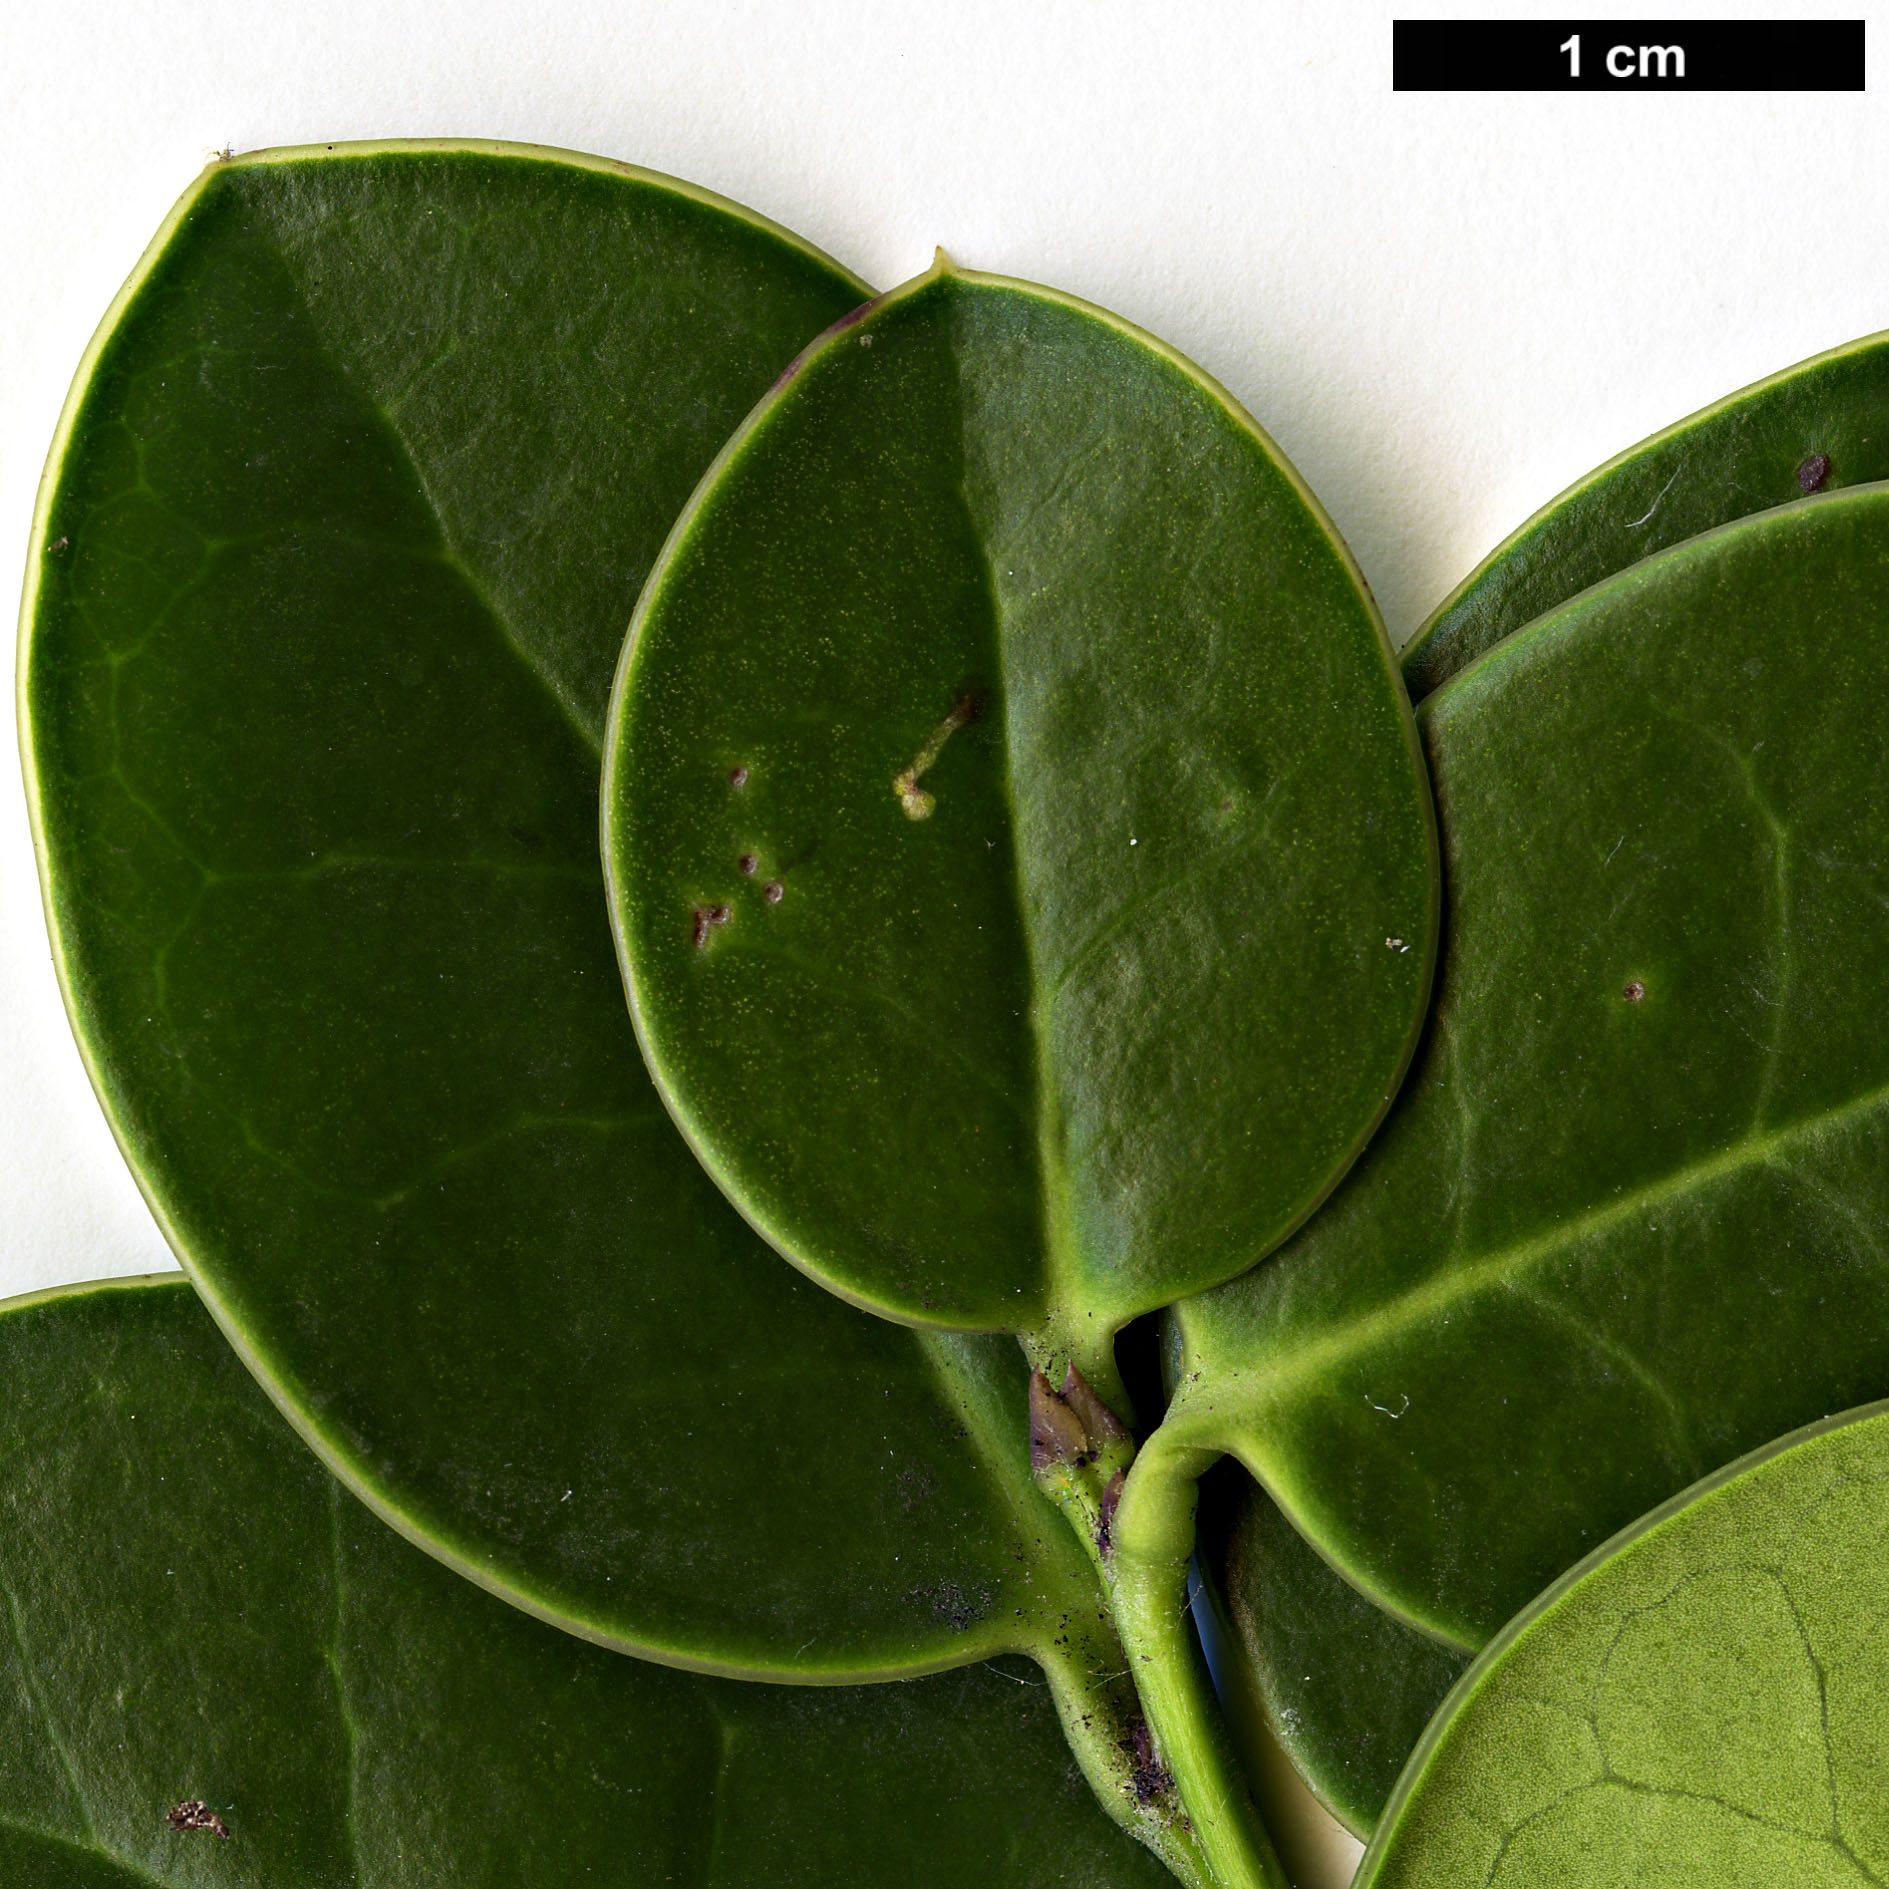 High resolution image: Family: Aquifoliaceae - Genus: Ilex - Taxon: perado - SpeciesSub: subsp. azorica